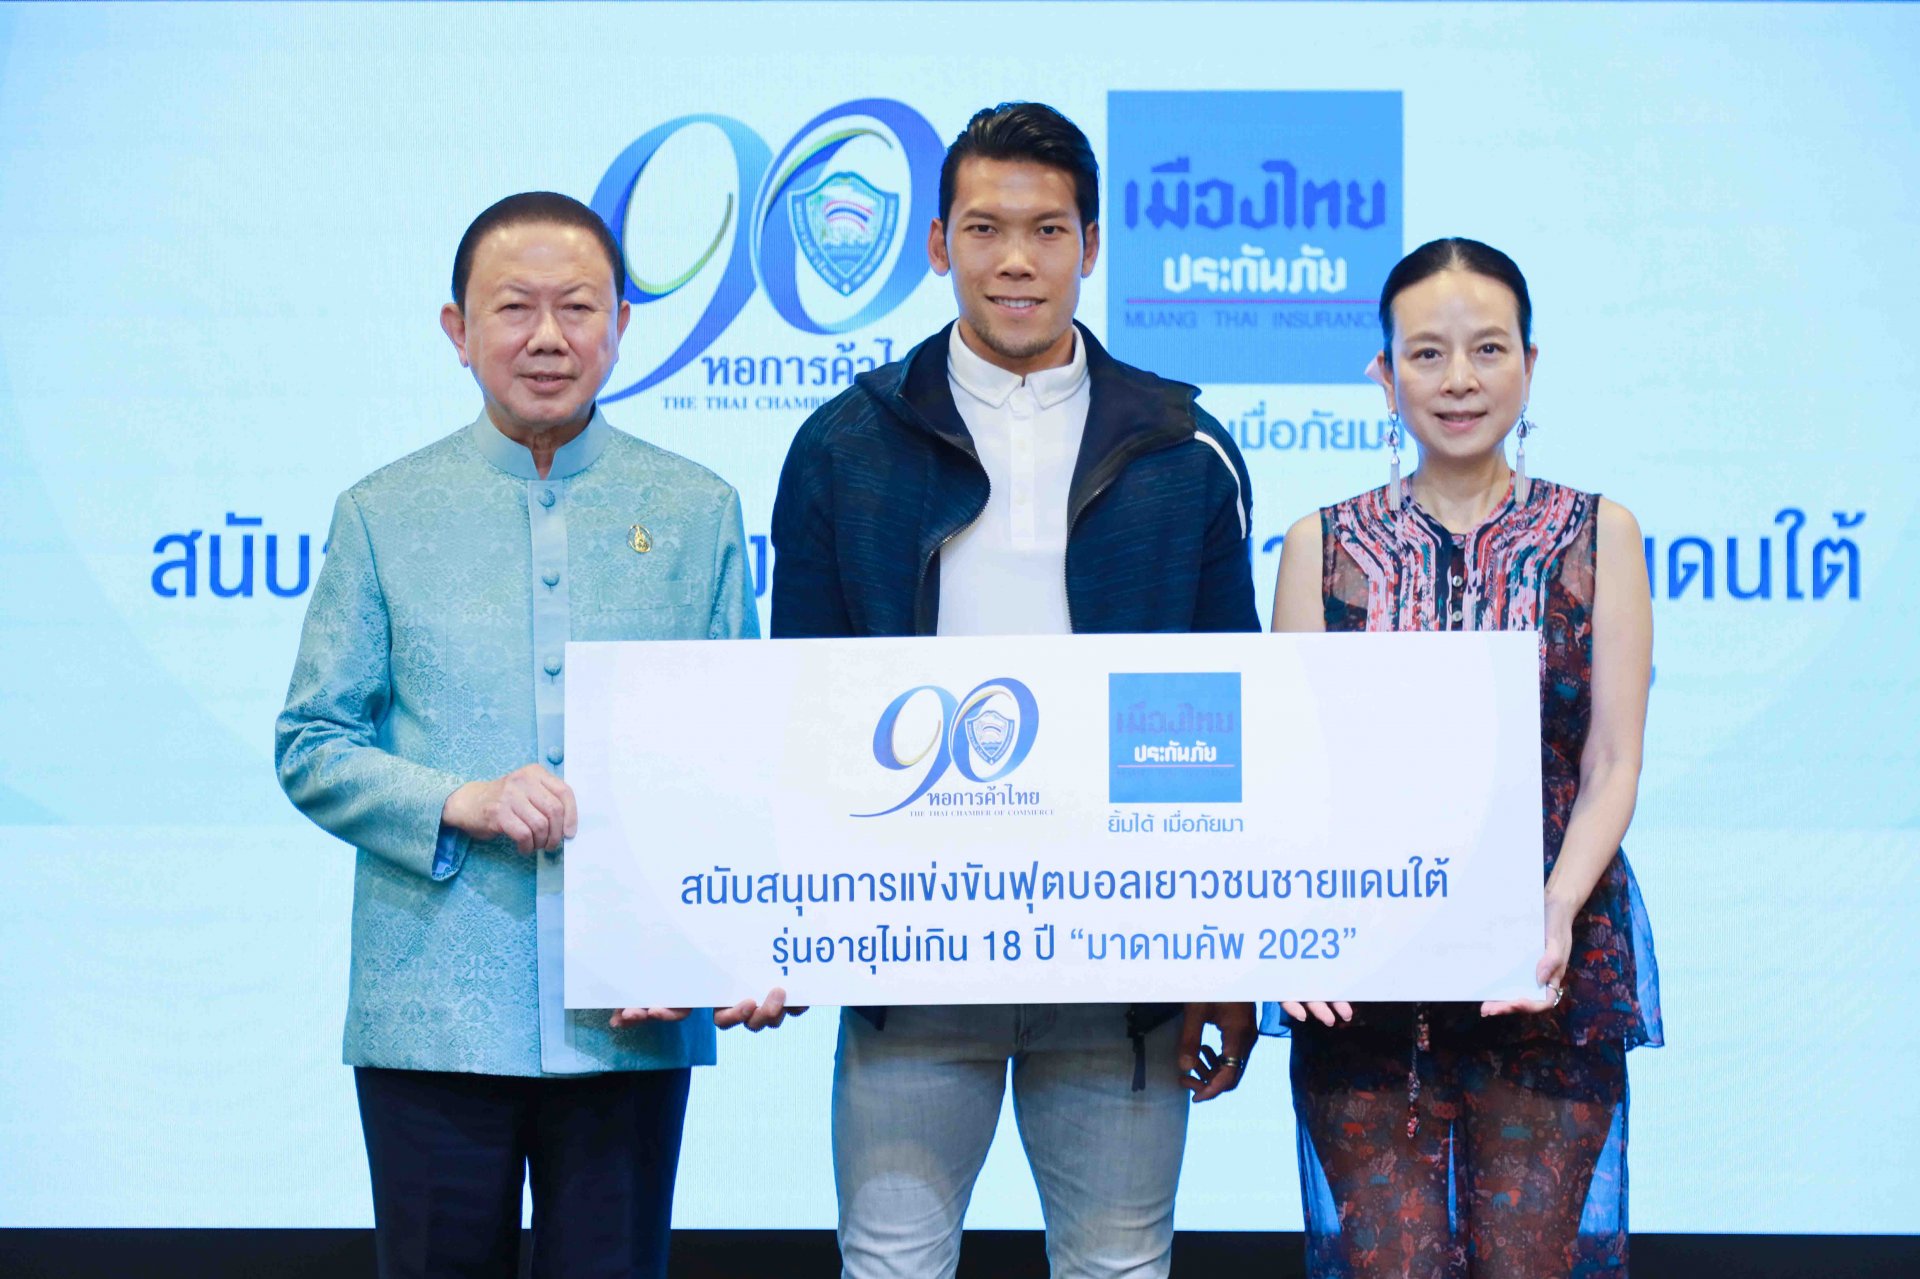 90 ปีหอการค้าไทย จับมือ เมืองไทยประกันภัย จัดการแข่งขันฟุตบอลเยาวชน "มาดามคัพ" 3 จังหวัดชายแดนใต้